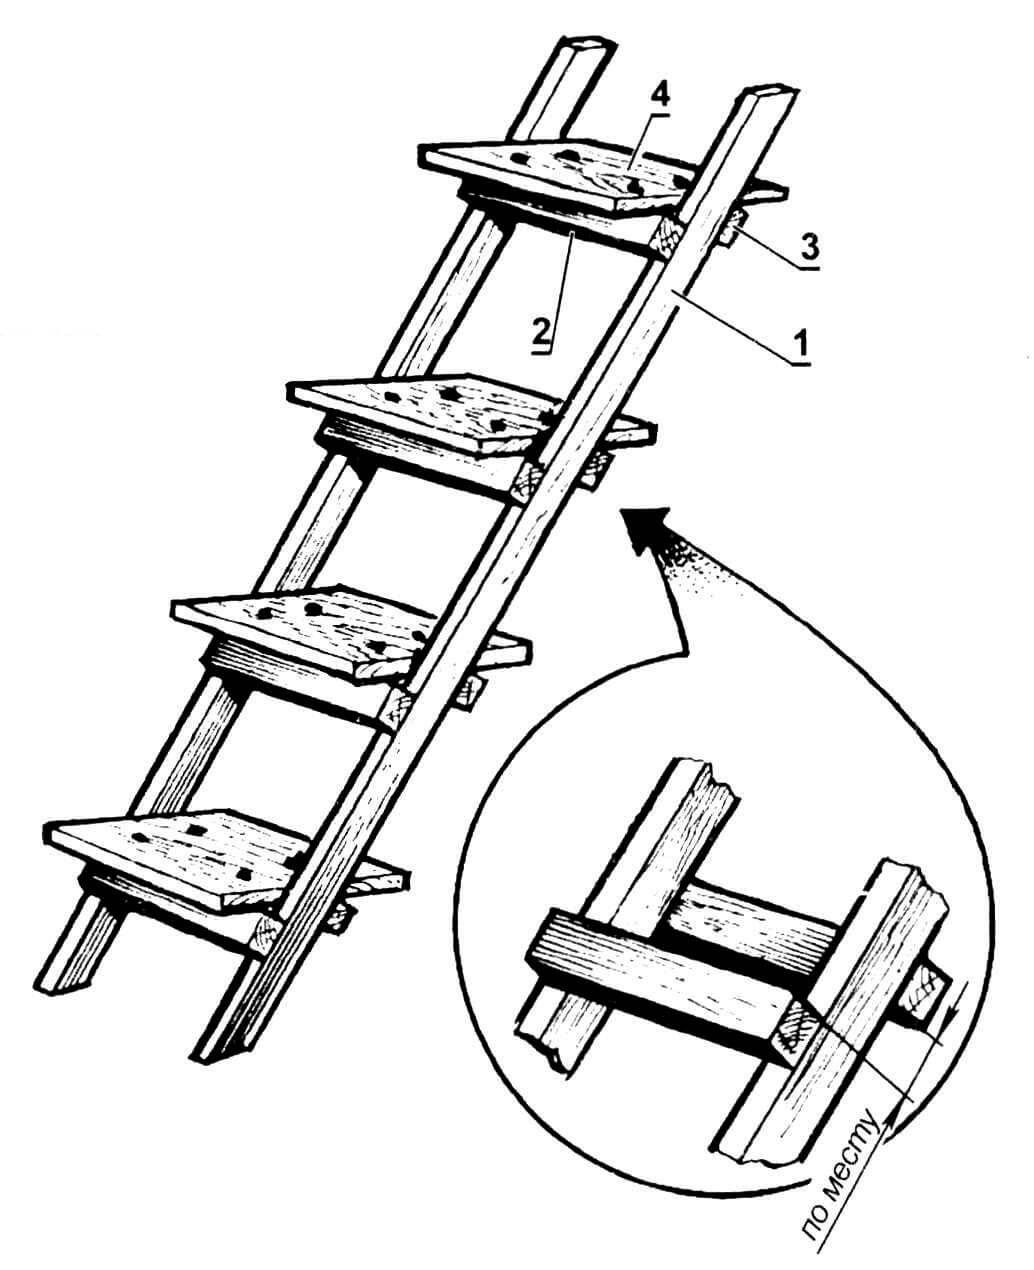 Приставная лестница из дерева своими руками: требования, расчет, изготовление и испытание. основные виды и особенности приставныъх лестниц, изготовление своими руками из дерева